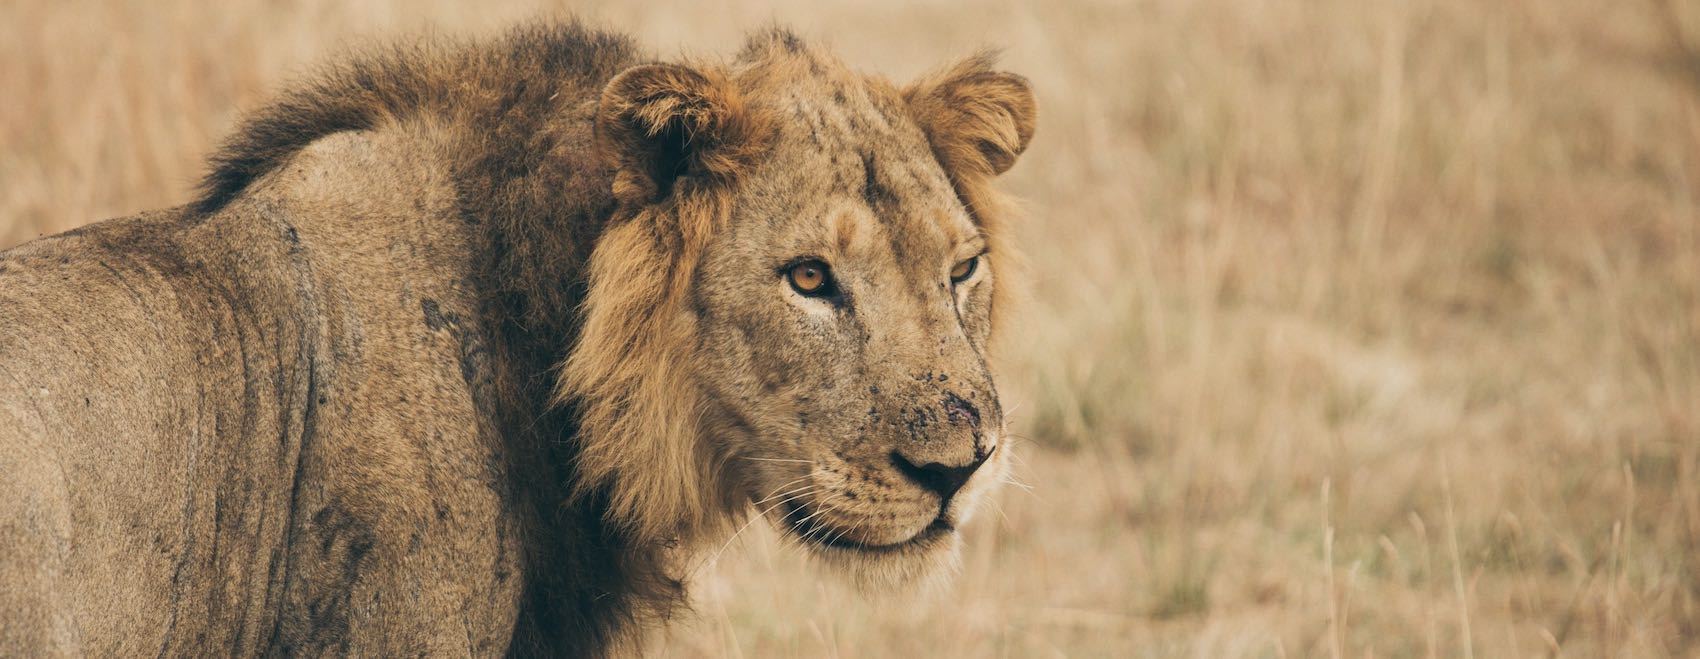 Tete de Lion dans la brousse en Afrique